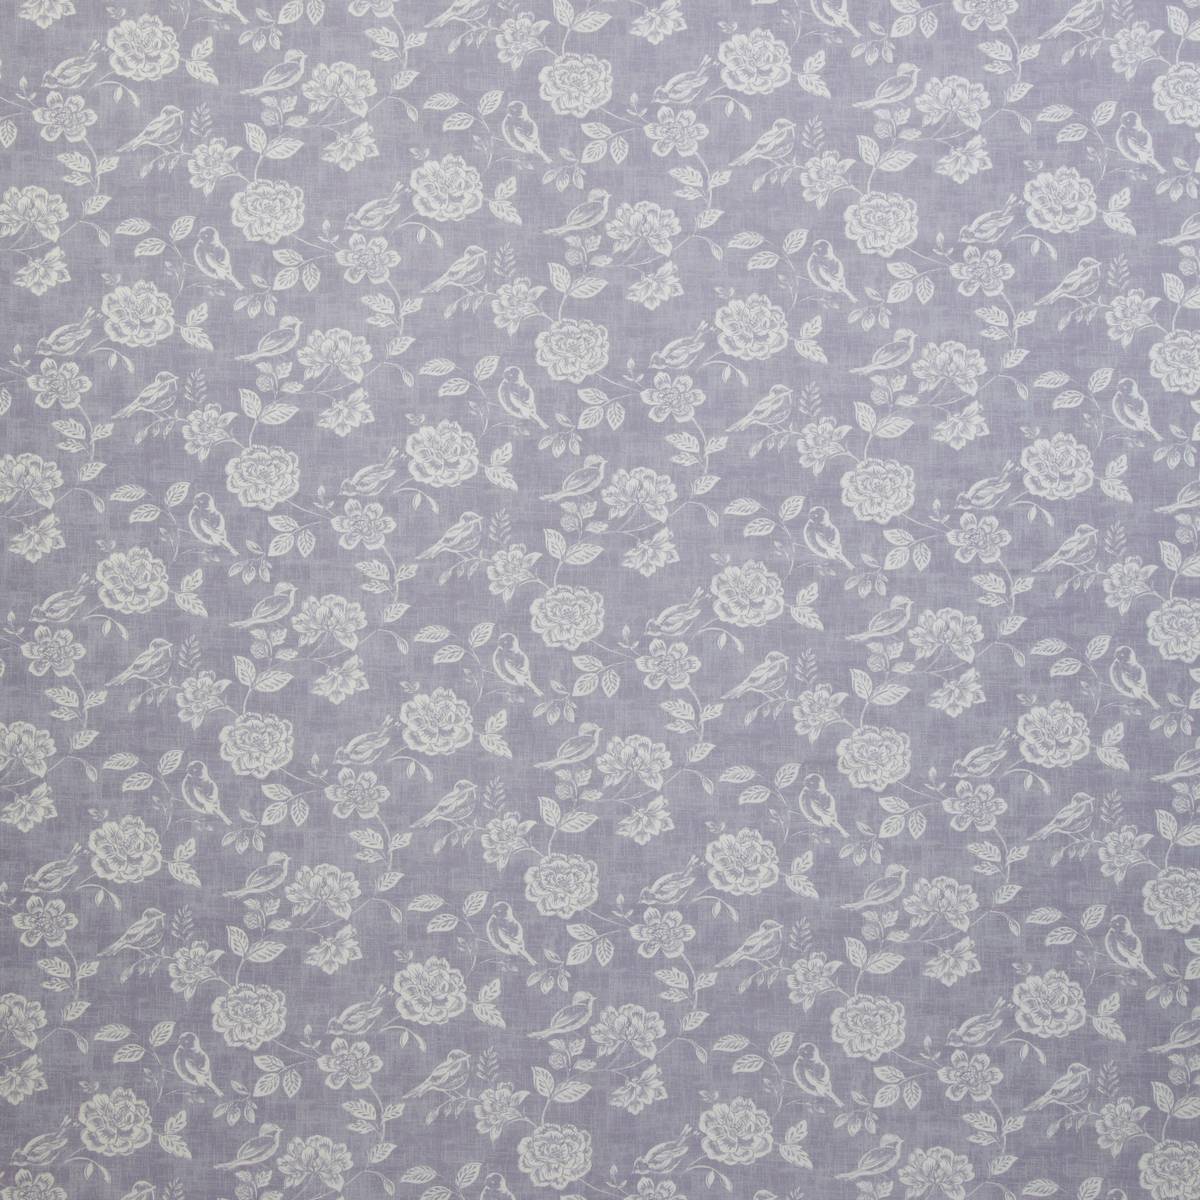 Bird Garden Print Lavender Fabric by iLiv